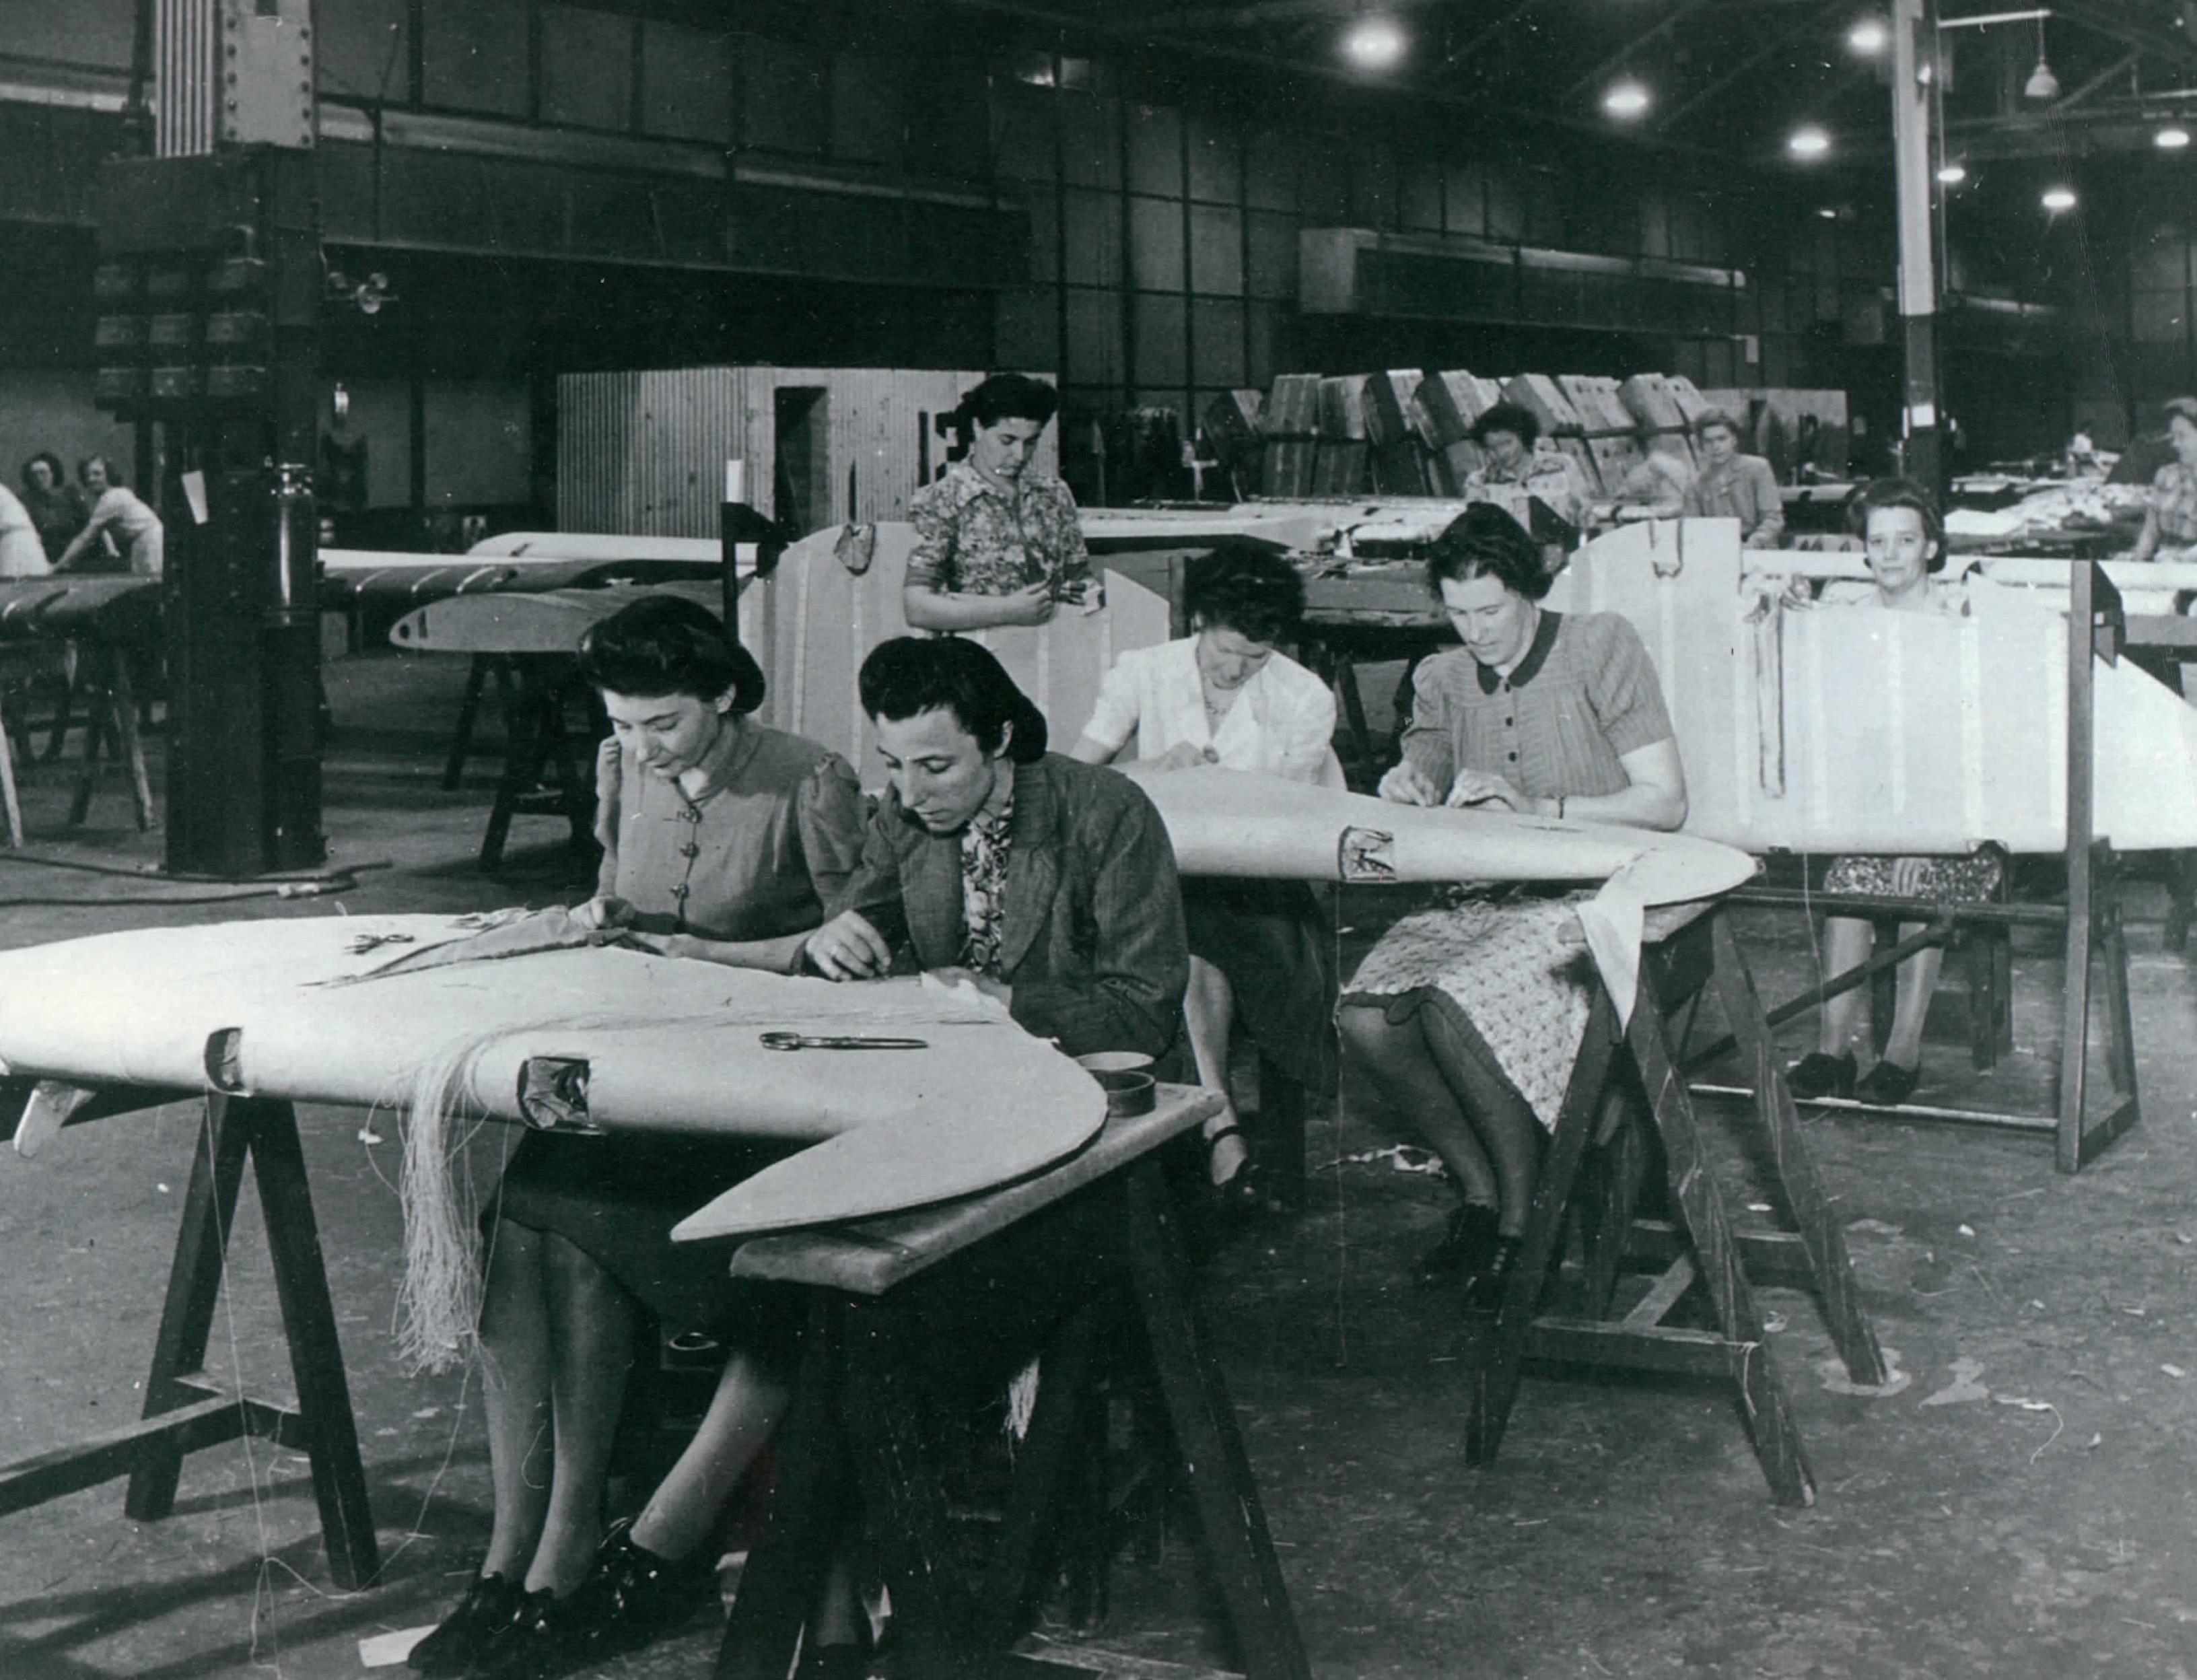 Aunty Dot (front left) making Spitfires, birmingham 1940s.